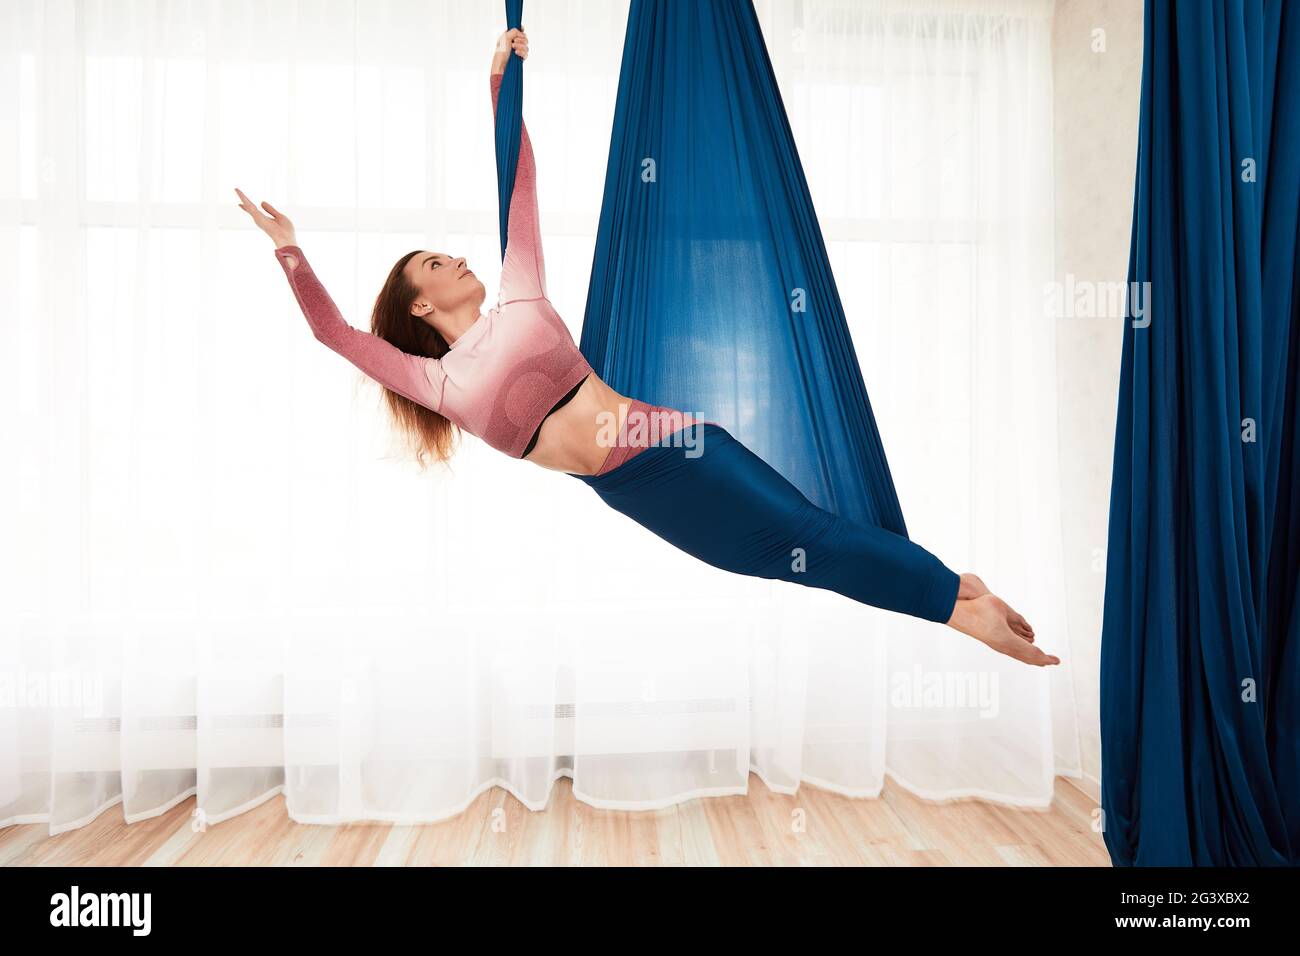 La ragazza è impegnata in yoga aereo in una bella posa in un amaca contro  una grande finestra, una donna sta facendo aerobica antigravitazionale in  un amaca Foto stock - Alamy